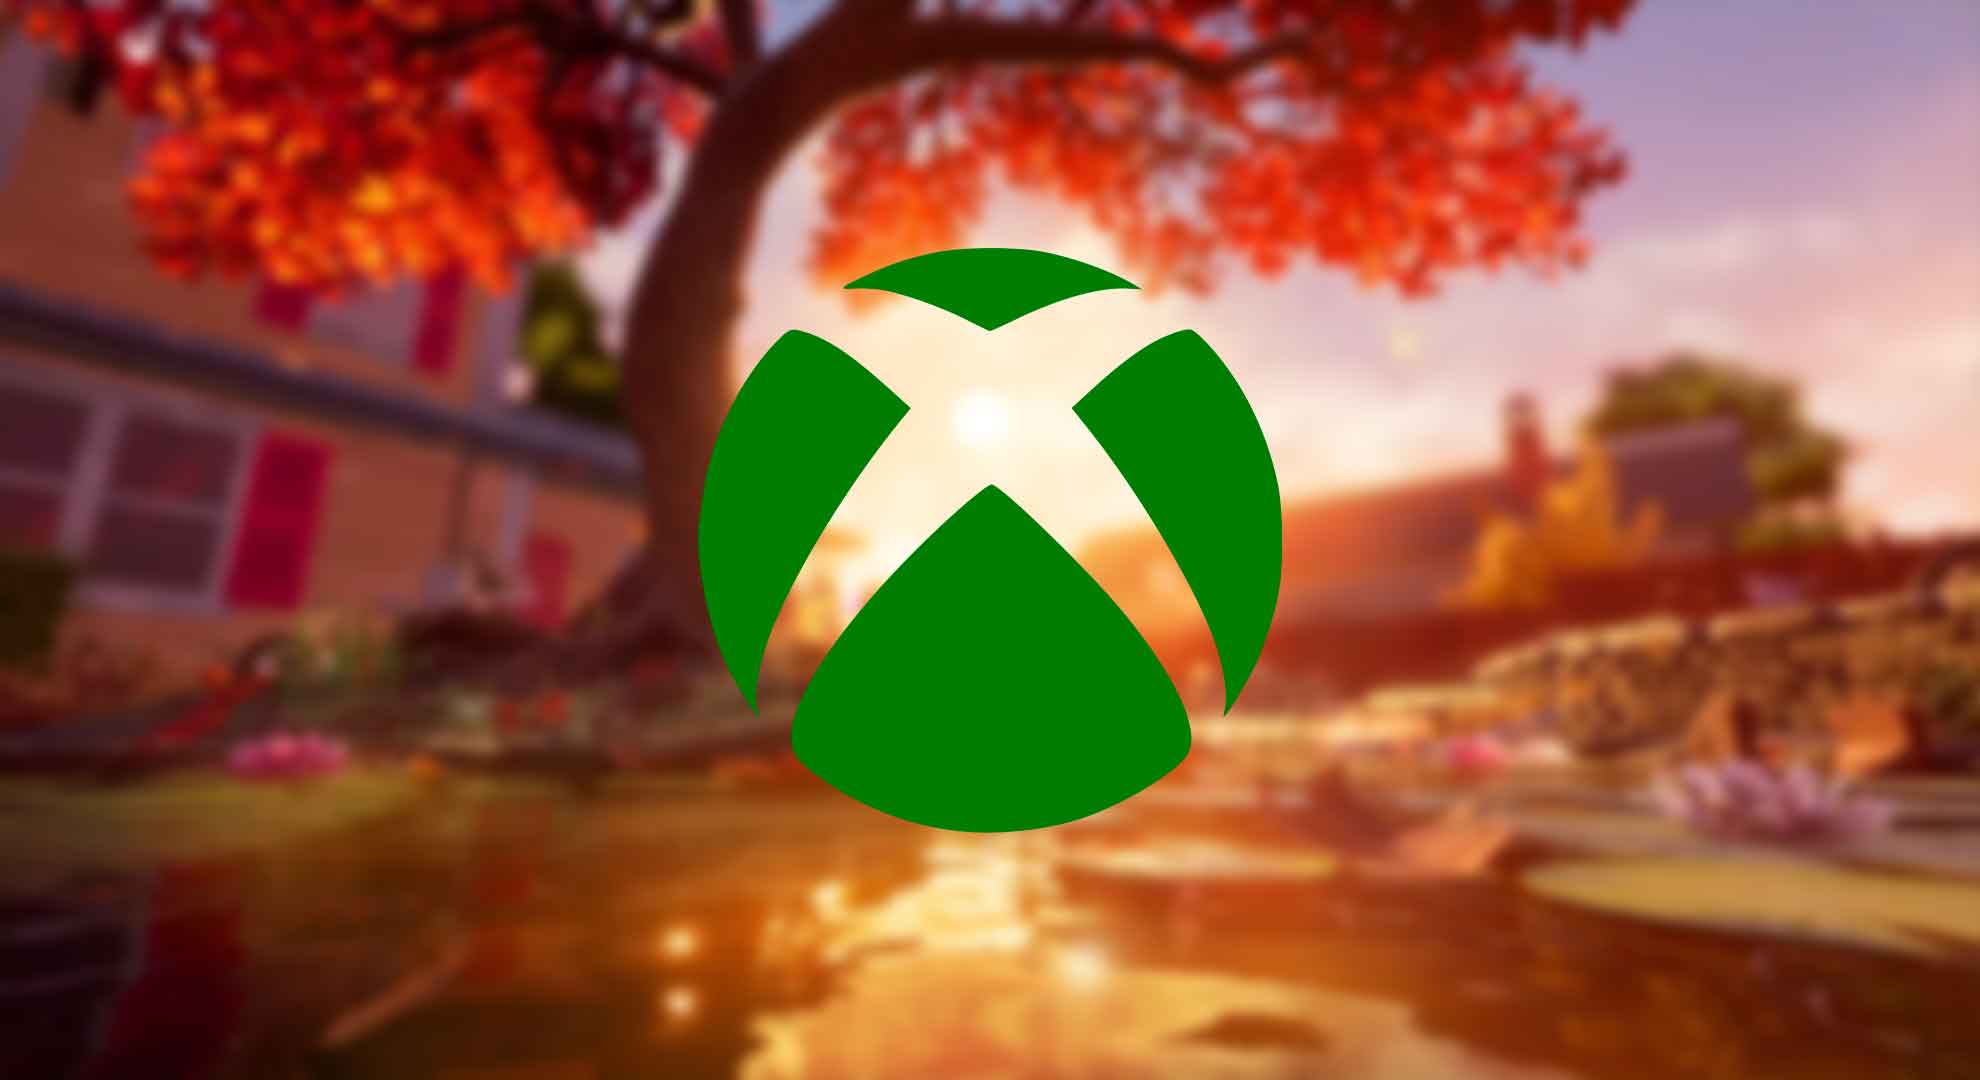 Xbox agrega otro nuevo fondo dinámico para los propietarios de Series X|S